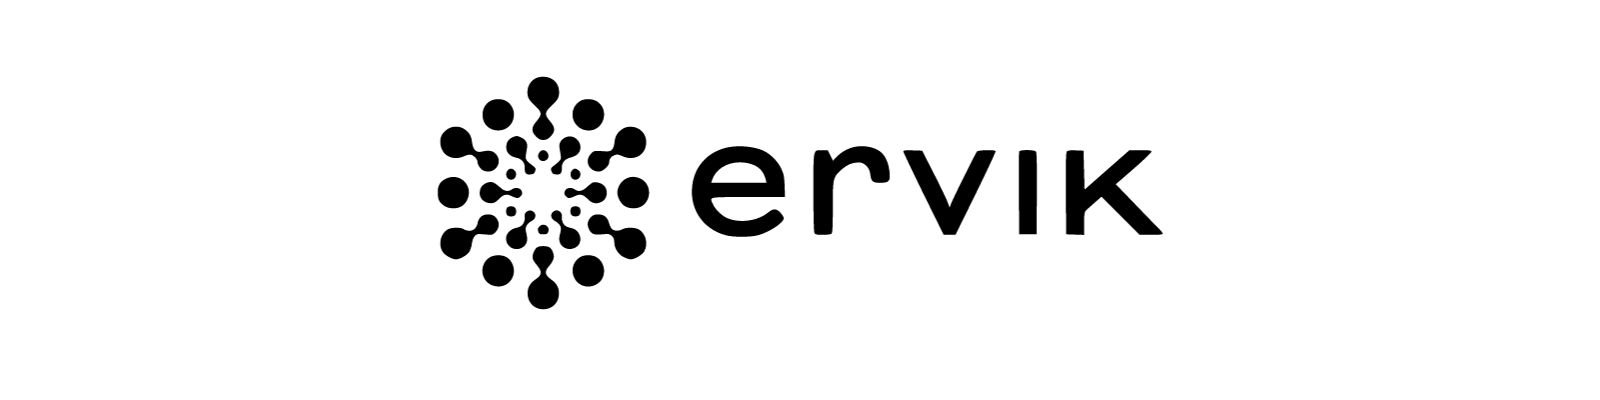 WhatsApp Ervik: Conheça todos os canais disponíveis!